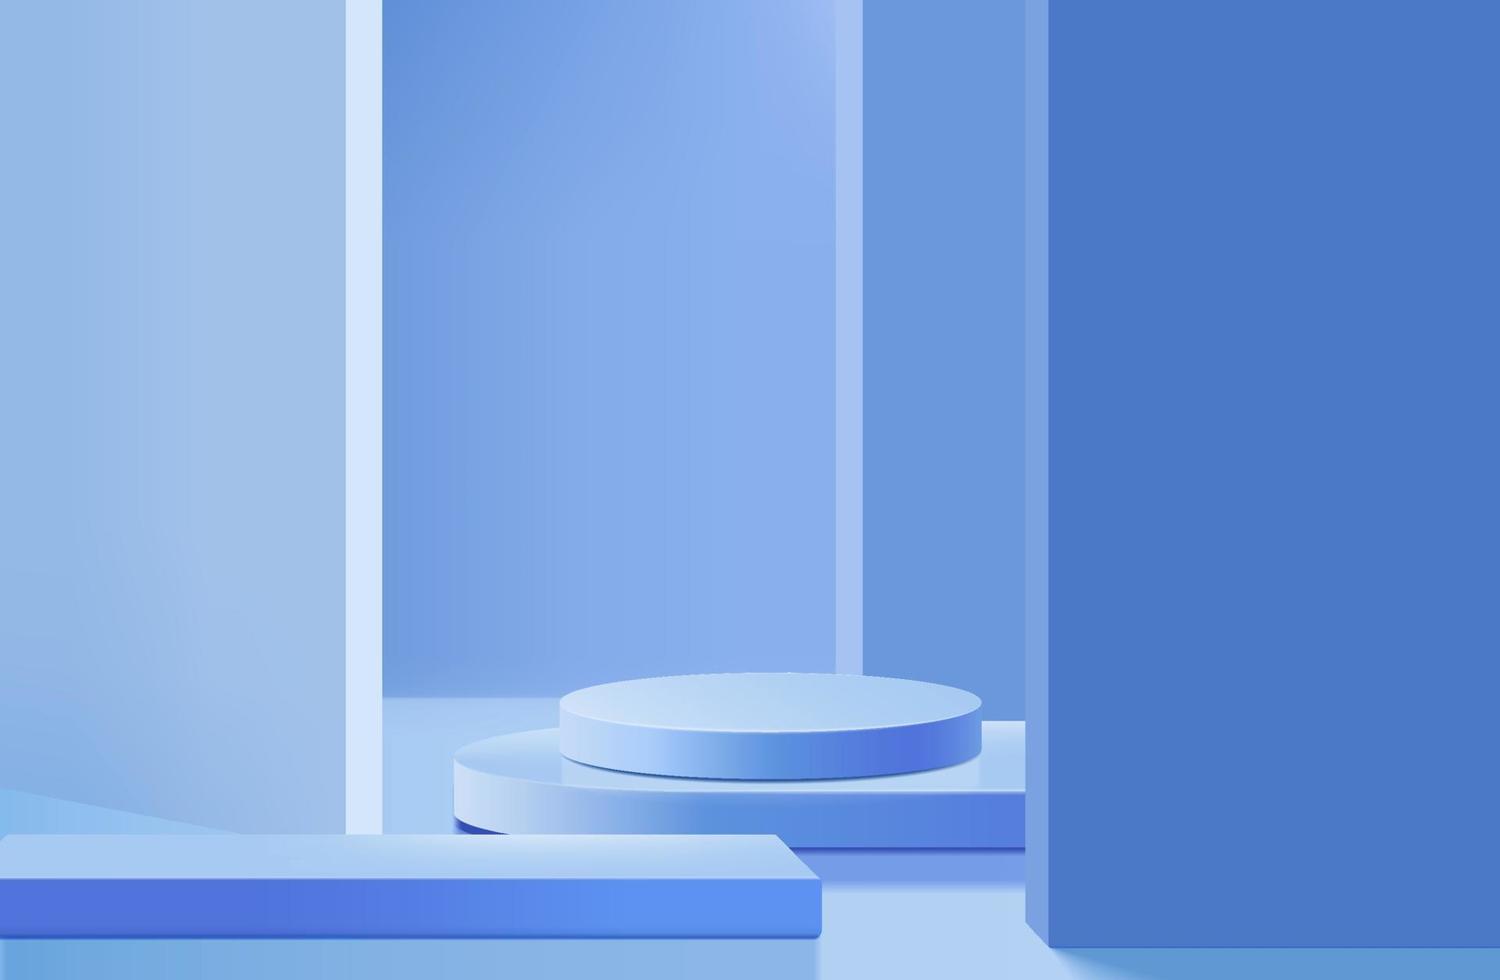 abstrakt 3d cylinder piedestal podium med blå minimal vägg scen och skugga. modern vektor rendering geometrisk plattform för kosmetiska produkter display presentation.